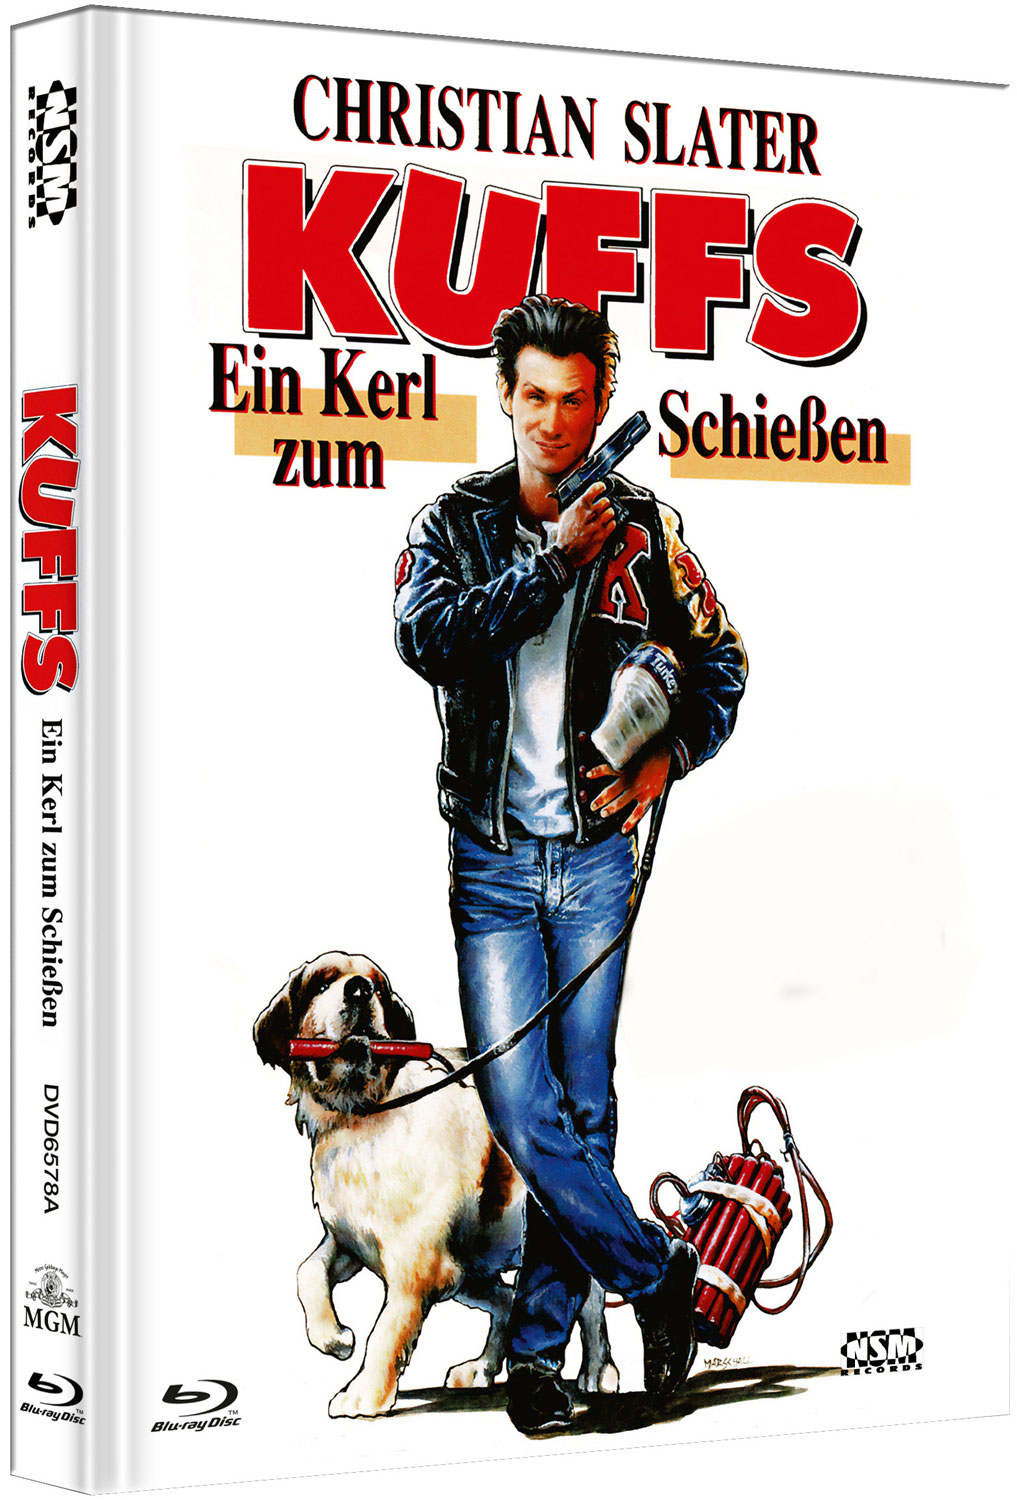 KUFFS - EIN KERL ZUM SCHIESSEN (Blu-Ray+DVD) - Cover A - Mediabook - Limited 666 Edition